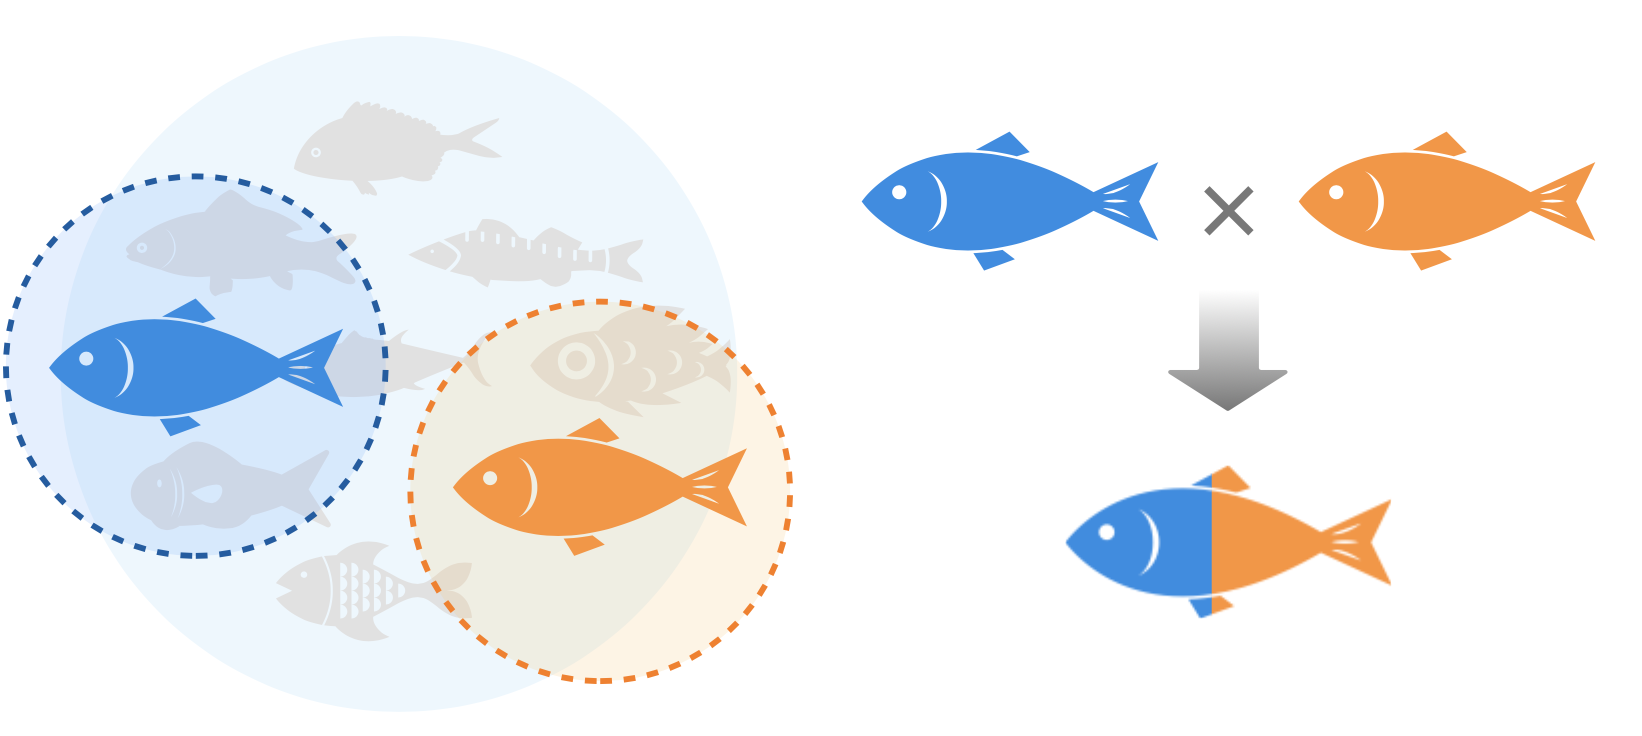 Sakana Dream Co. develops high-value aquaculture fish through reproductive stem cell transplantation